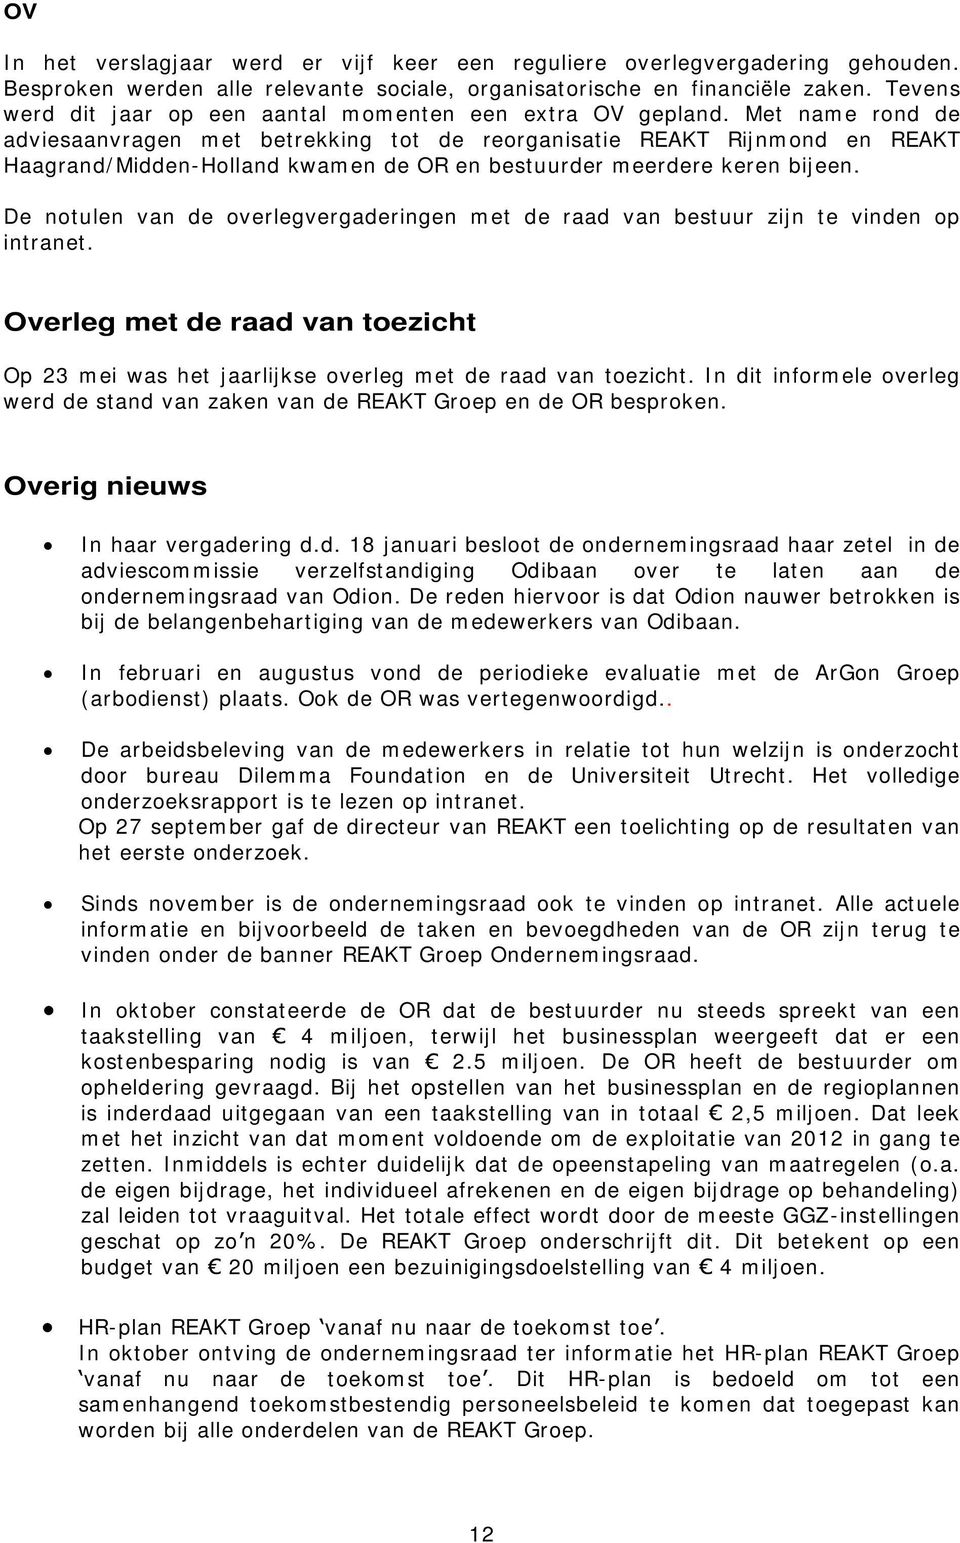 Met name rond de adviesaanvragen met betrekking tot de reorganisatie REAKT Rijnmond en REAKT Haagrand/Midden-Holland kwamen de OR en bestuurder meerdere keren bijeen.